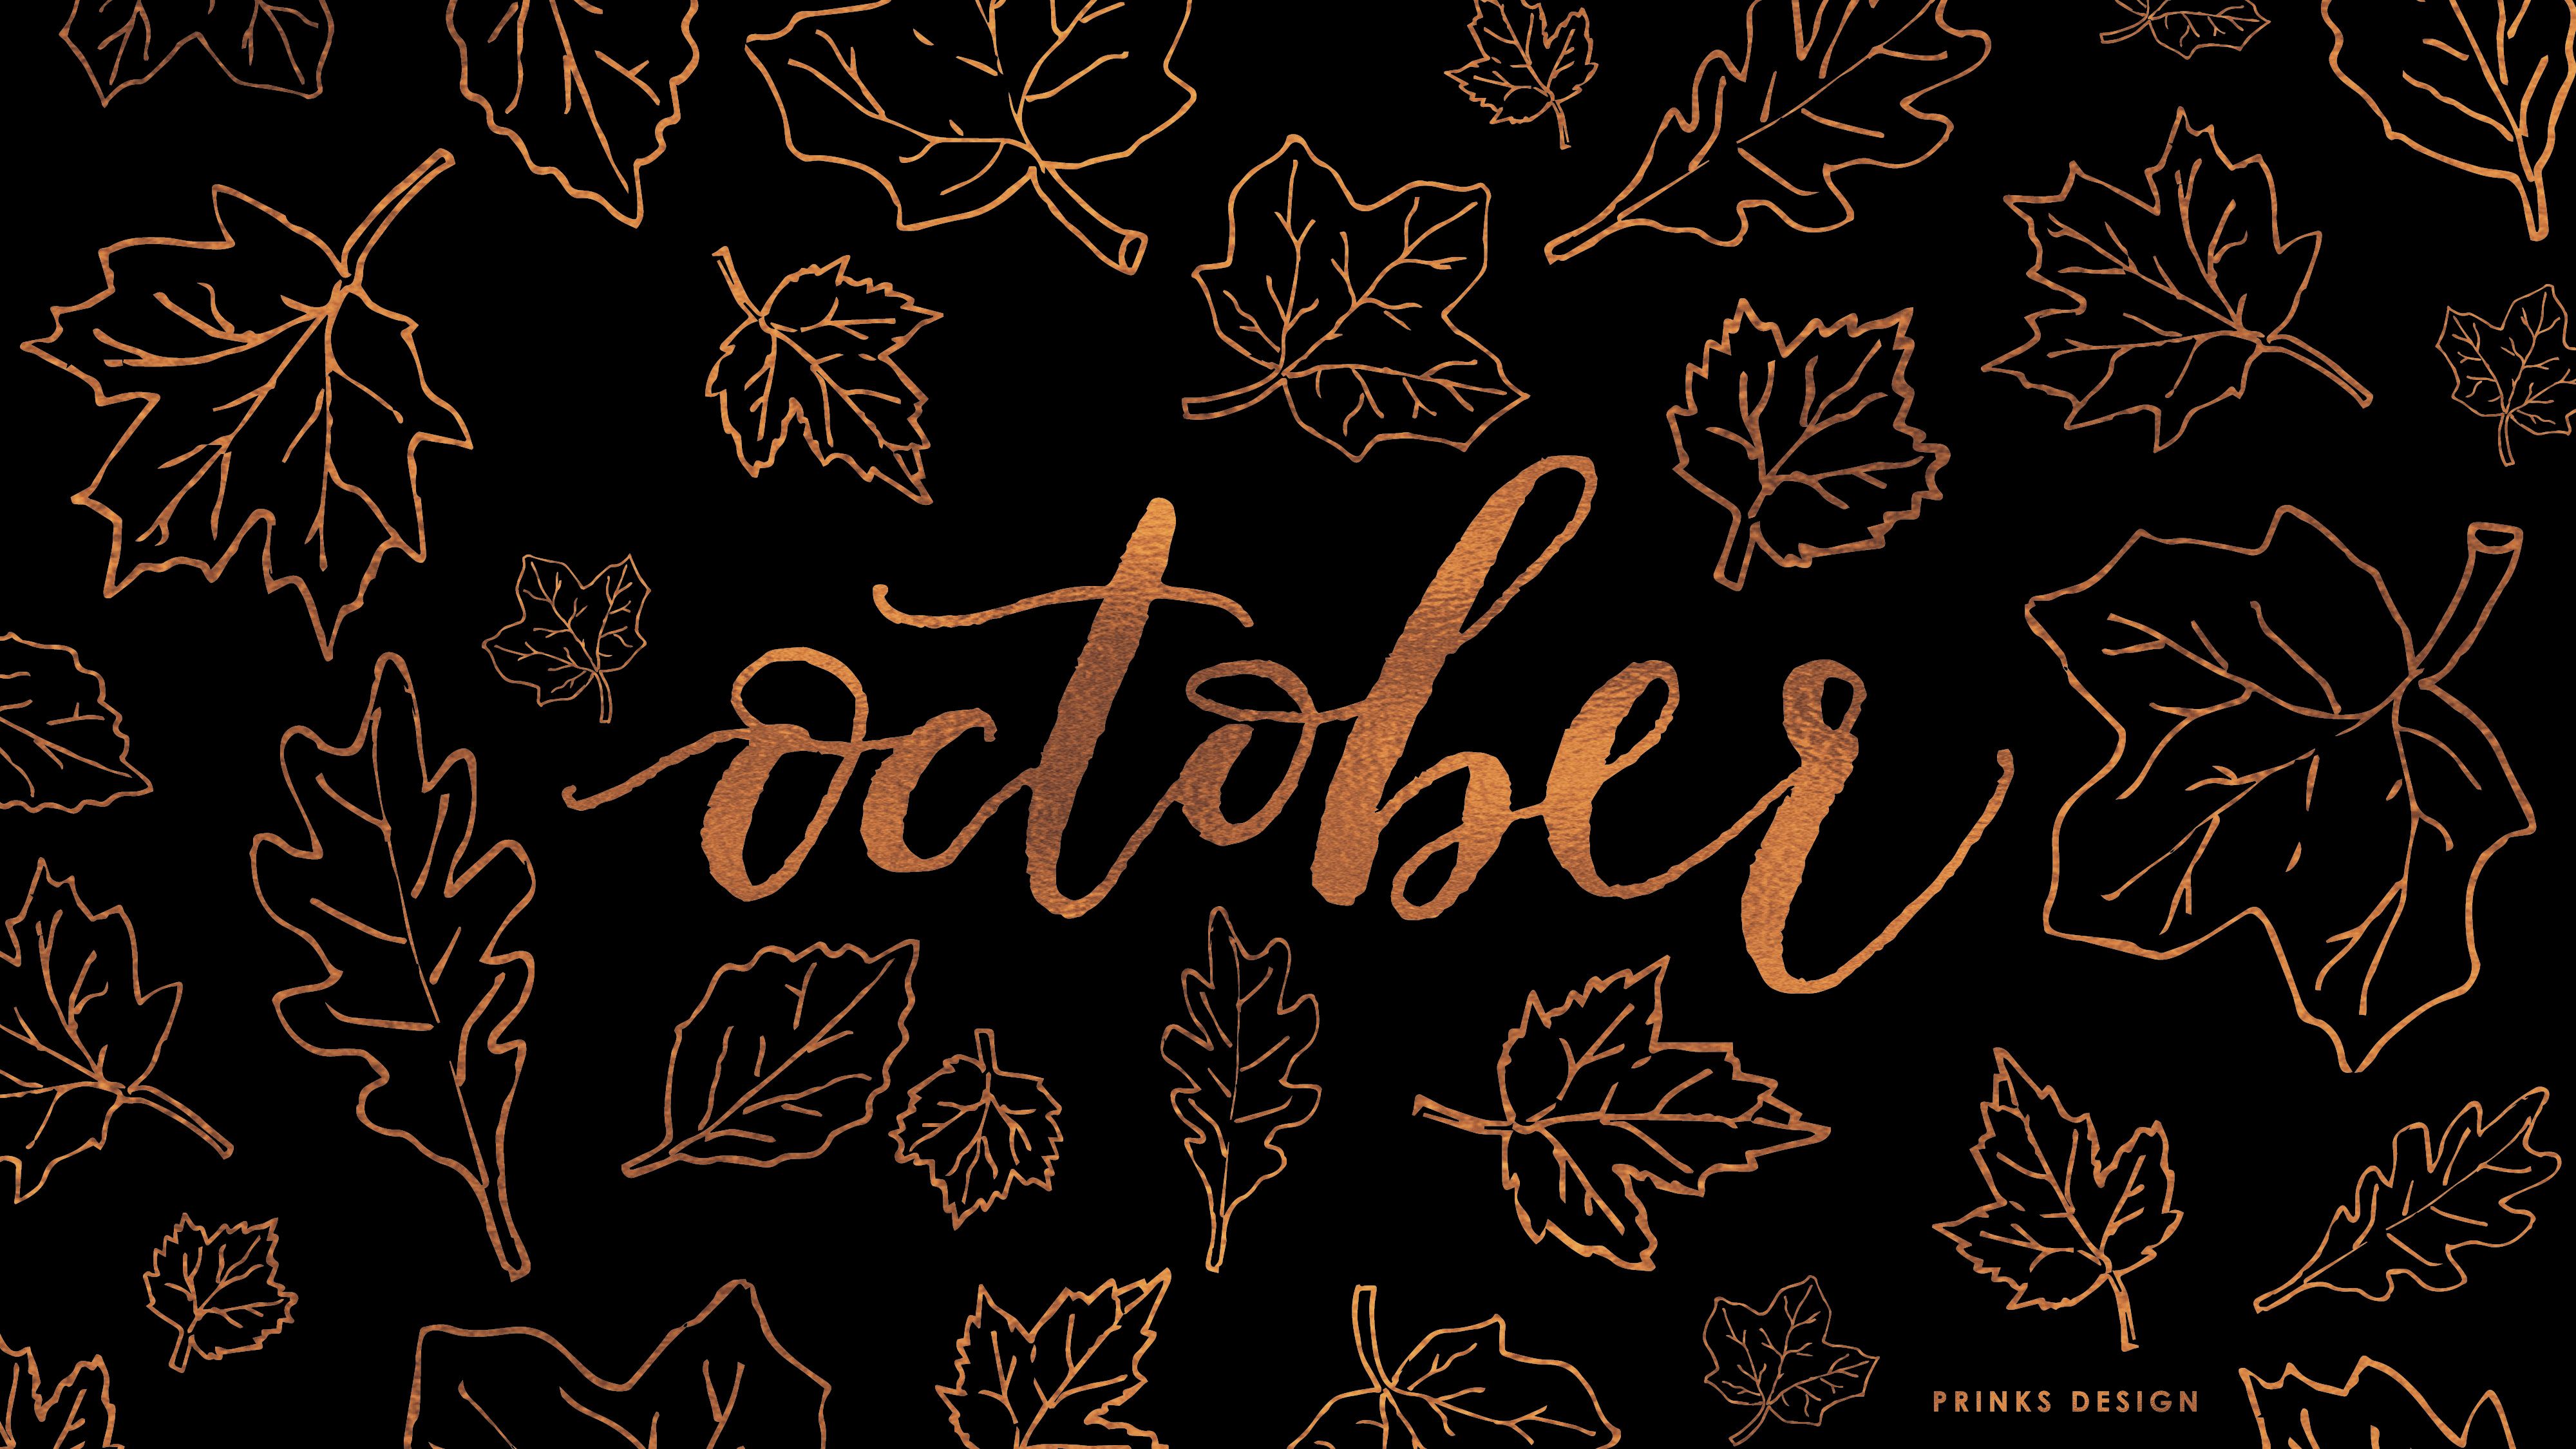 october wallpaper. October wallpaper, Desktop wallpaper fall, Halloween desktop wallpaper